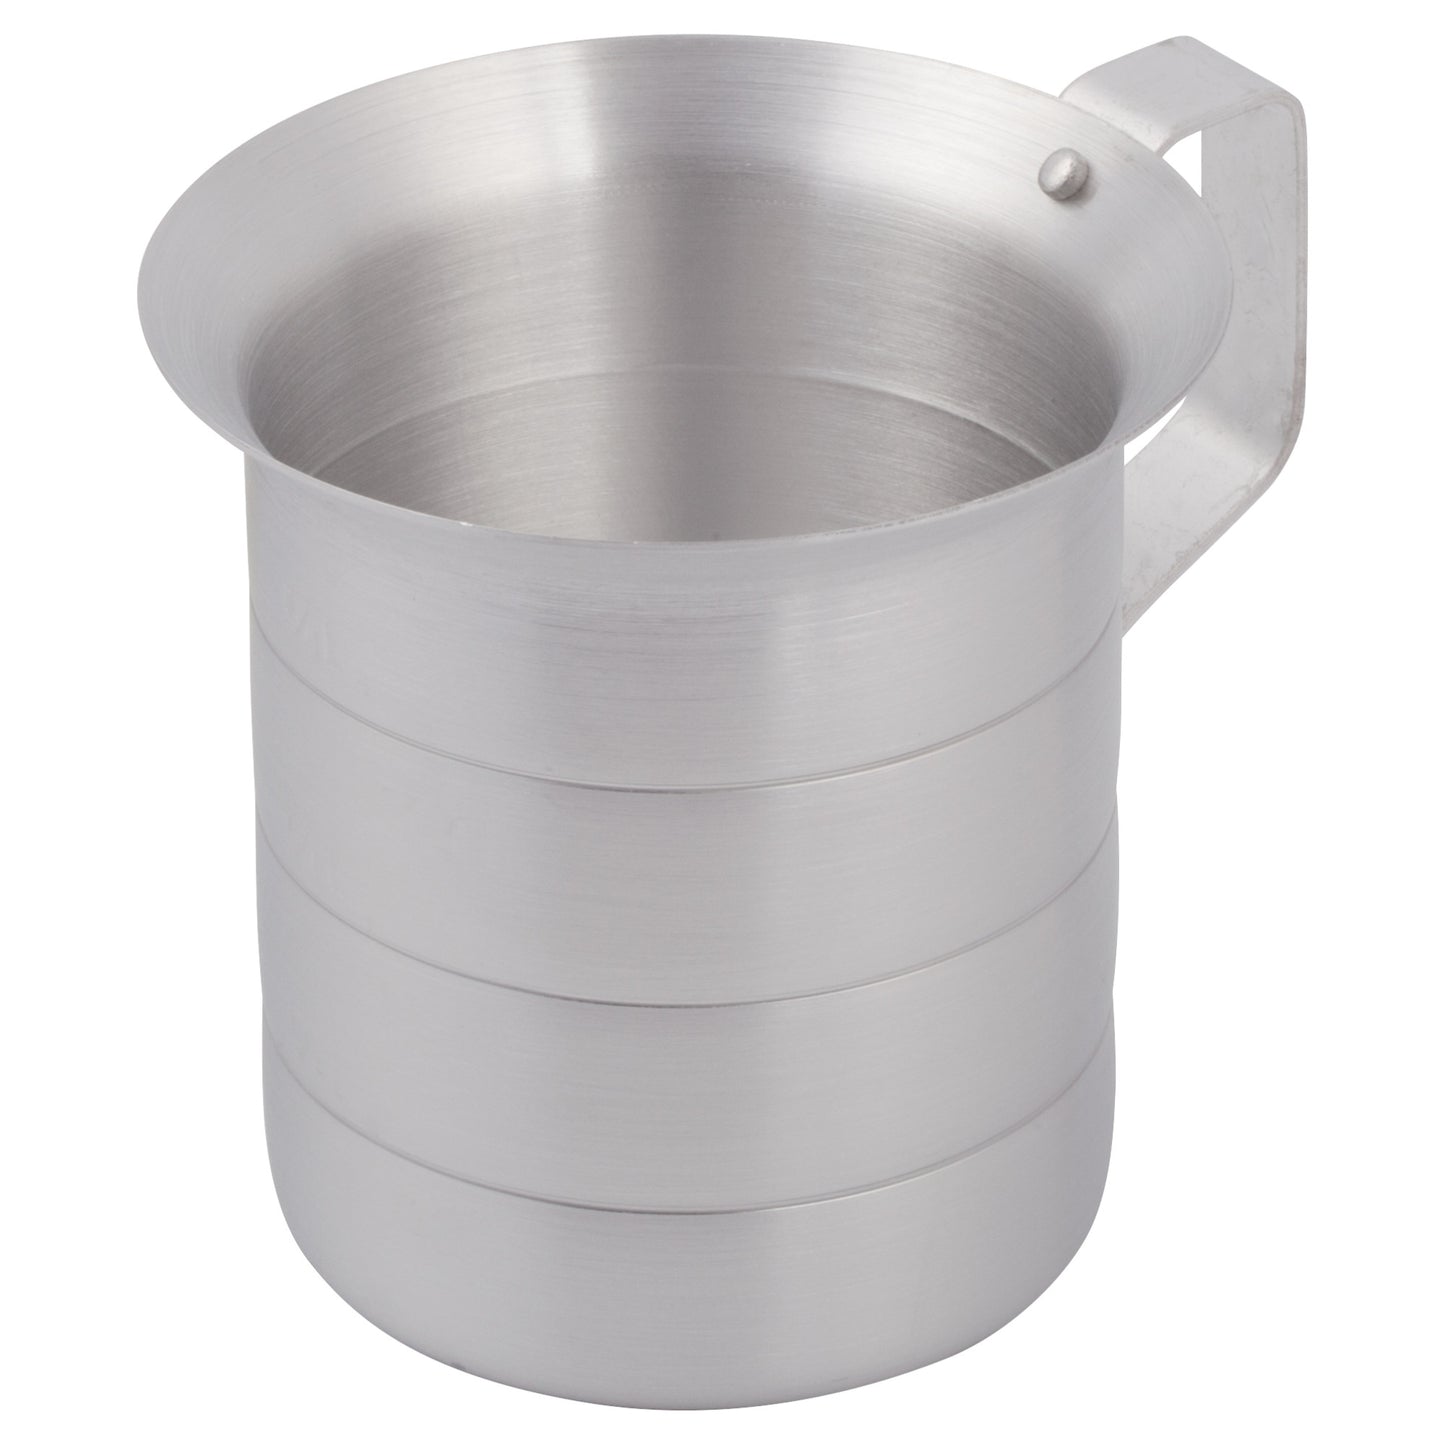 AM-1 - Aluminum Measuring Cups - 1 Quart